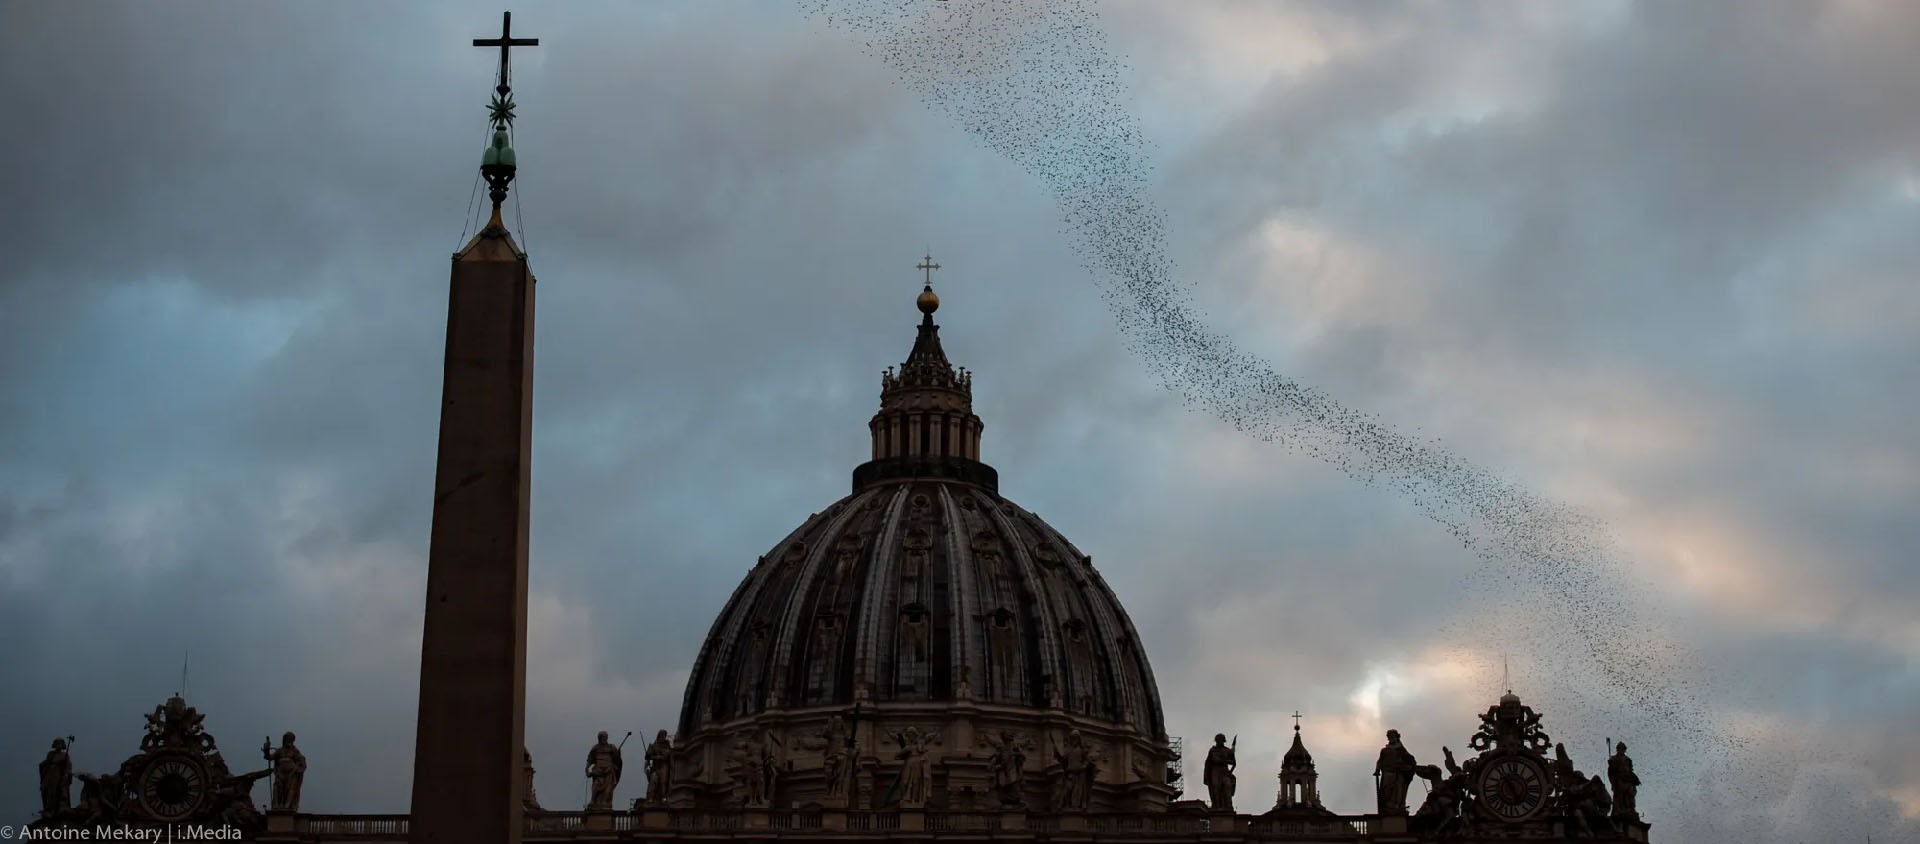 Comme des centaines de monuments dans le monde, la coupole de la basilique St-Pierre s'est éteinte durant une heure | © Antoine Mekary/I.Média